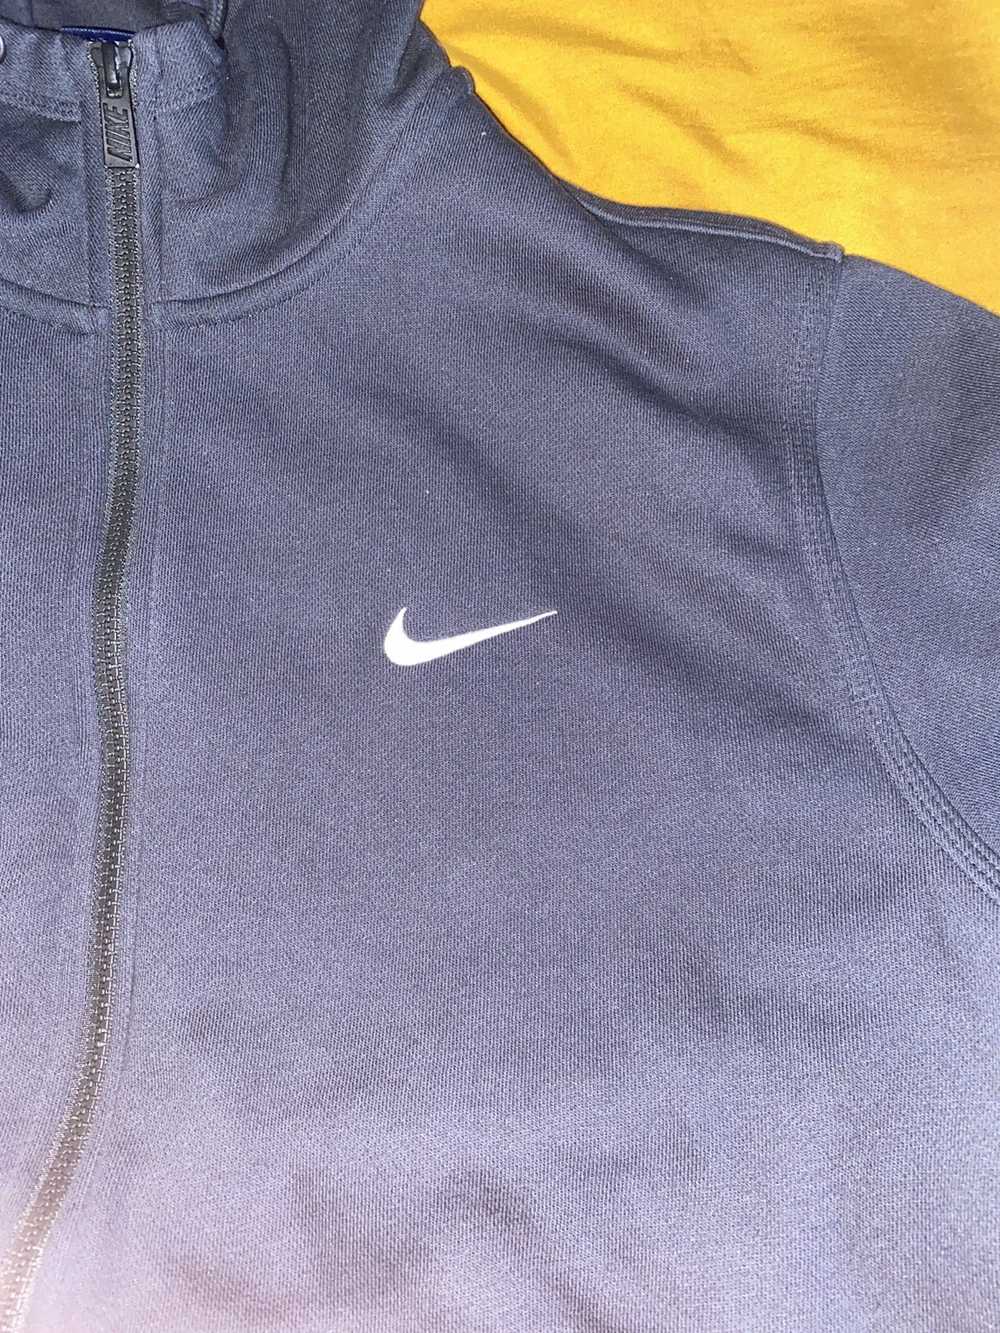 Nike Nike hoodie - image 5